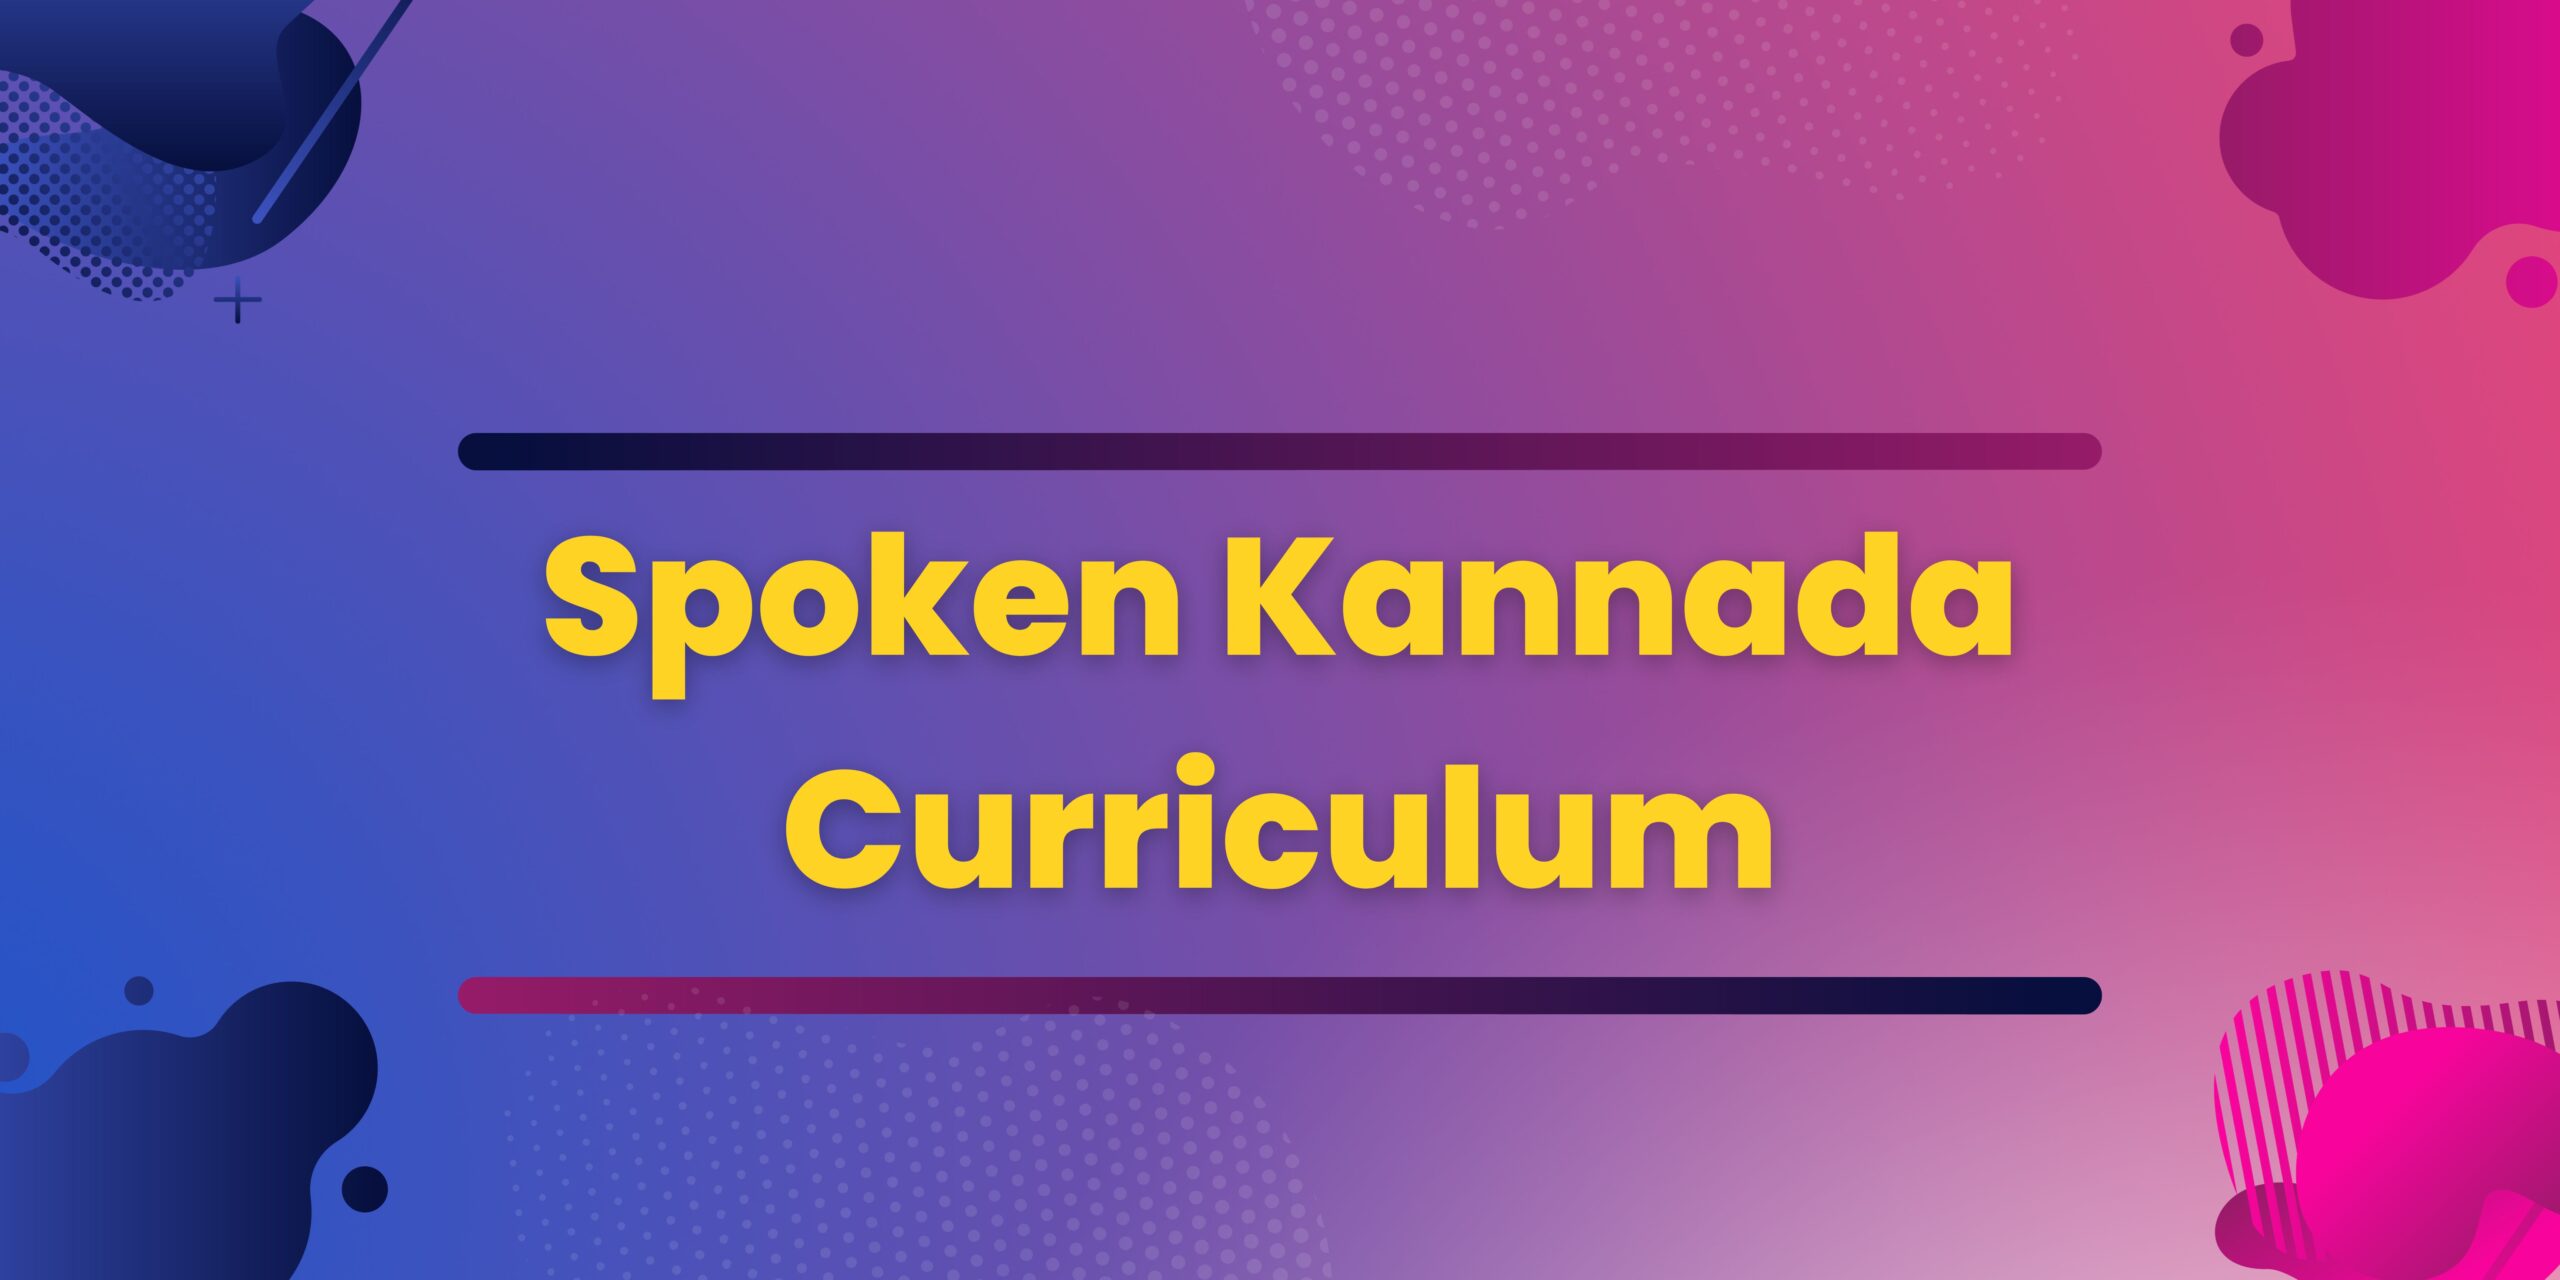 Spoken Kannada Curriculum